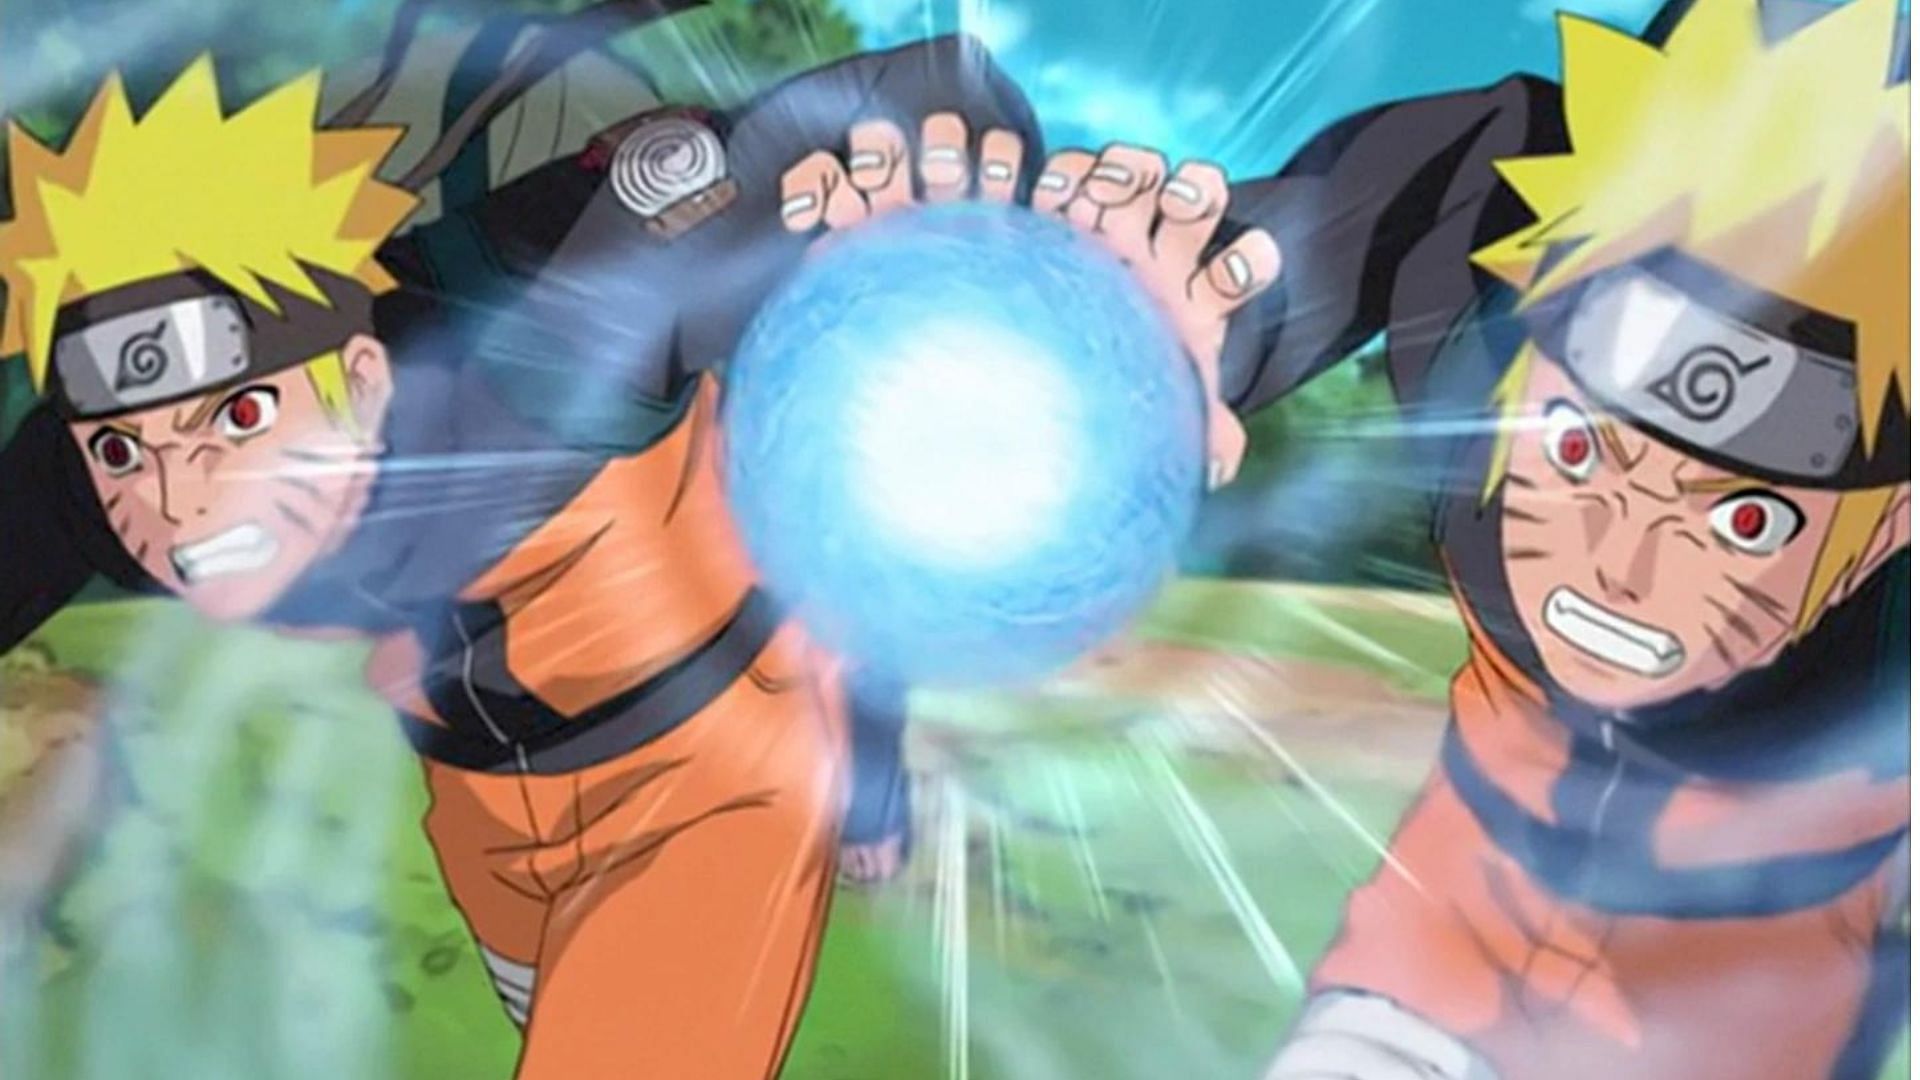 Naruto using Big Ball Rasengan in Naruto Shippuden (Image via Studio Pierrot)